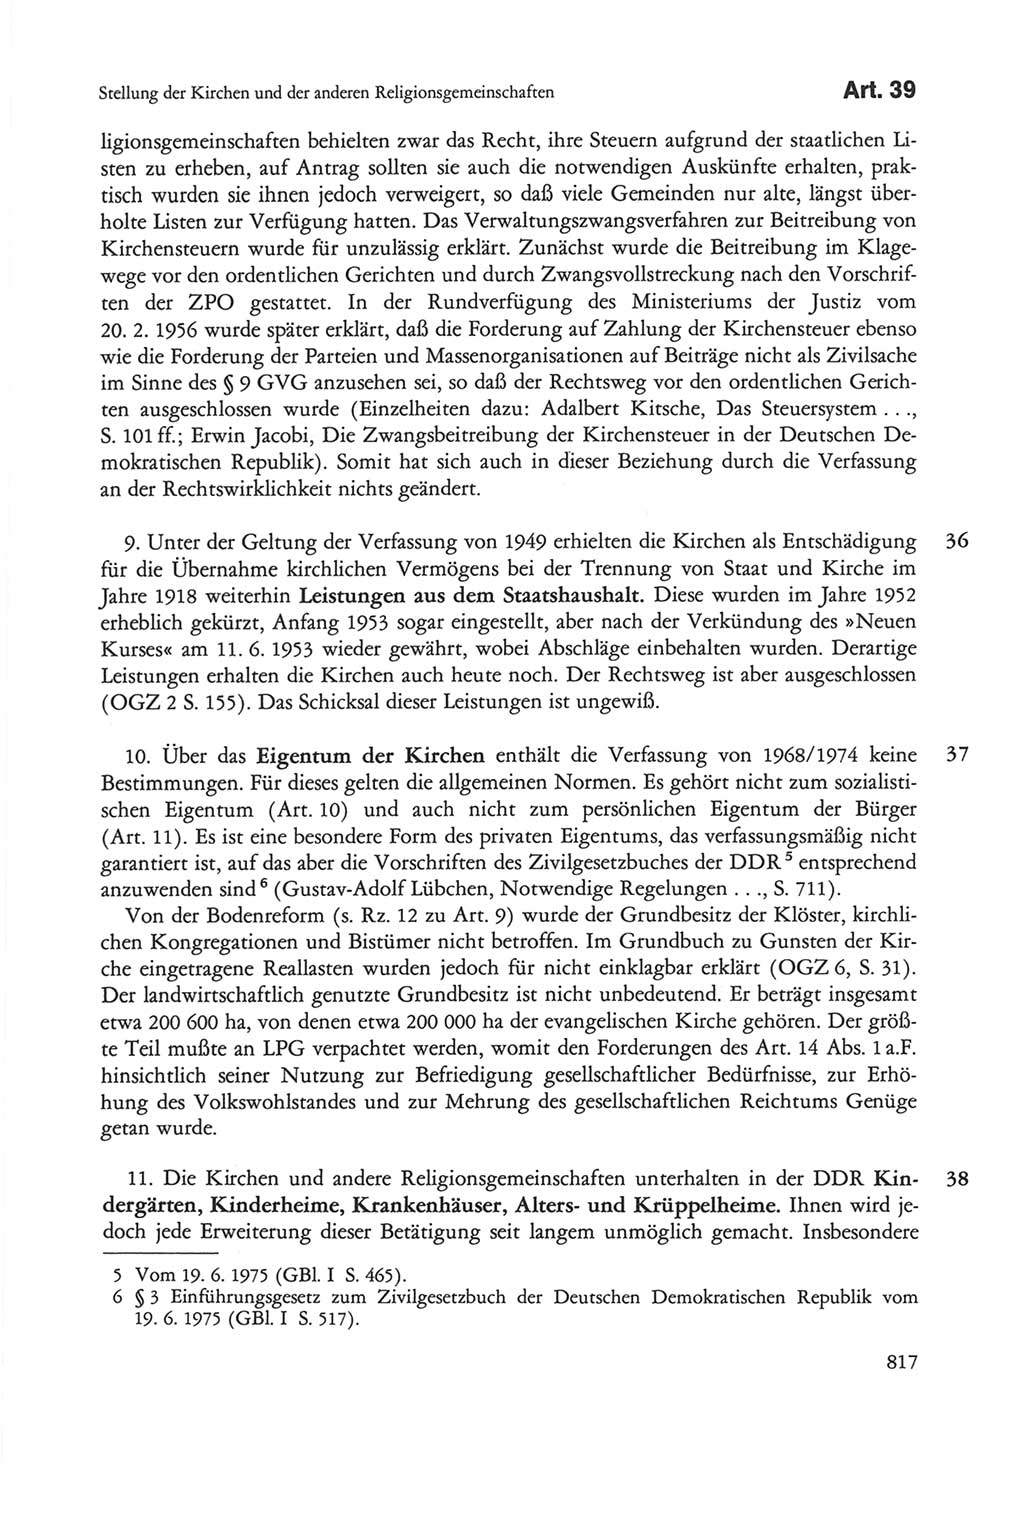 Die sozialistische Verfassung der Deutschen Demokratischen Republik (DDR), Kommentar 1982, Seite 817 (Soz. Verf. DDR Komm. 1982, S. 817)